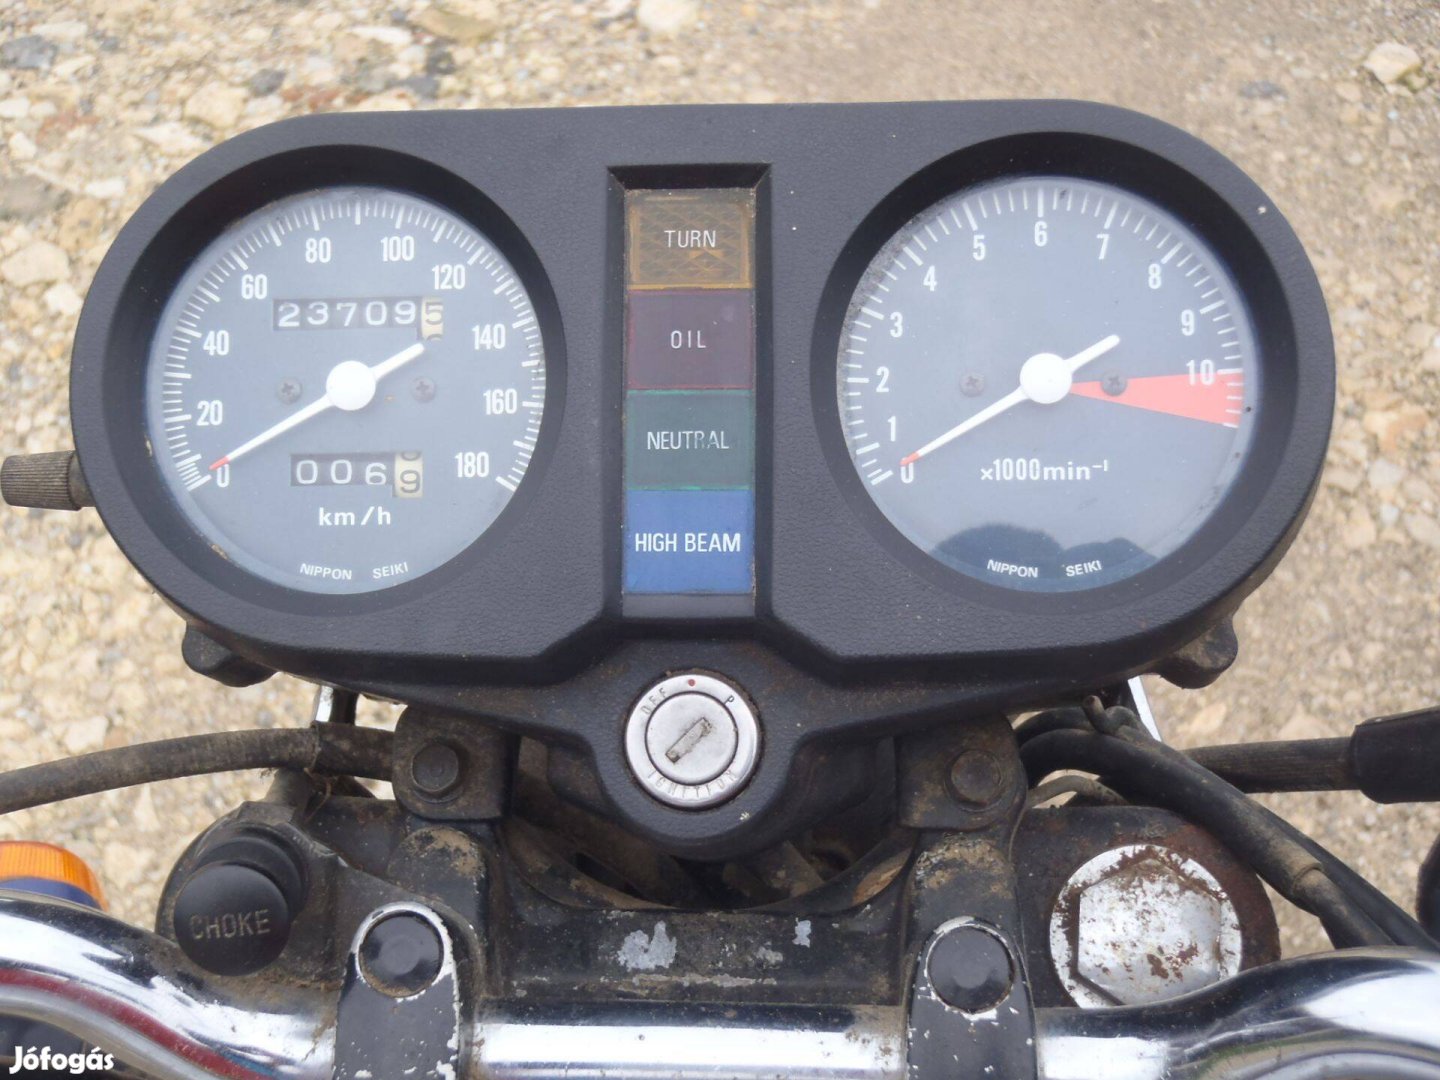 Honda CB 400 N-ről :23709 km-t használt ,gyári műszerfal